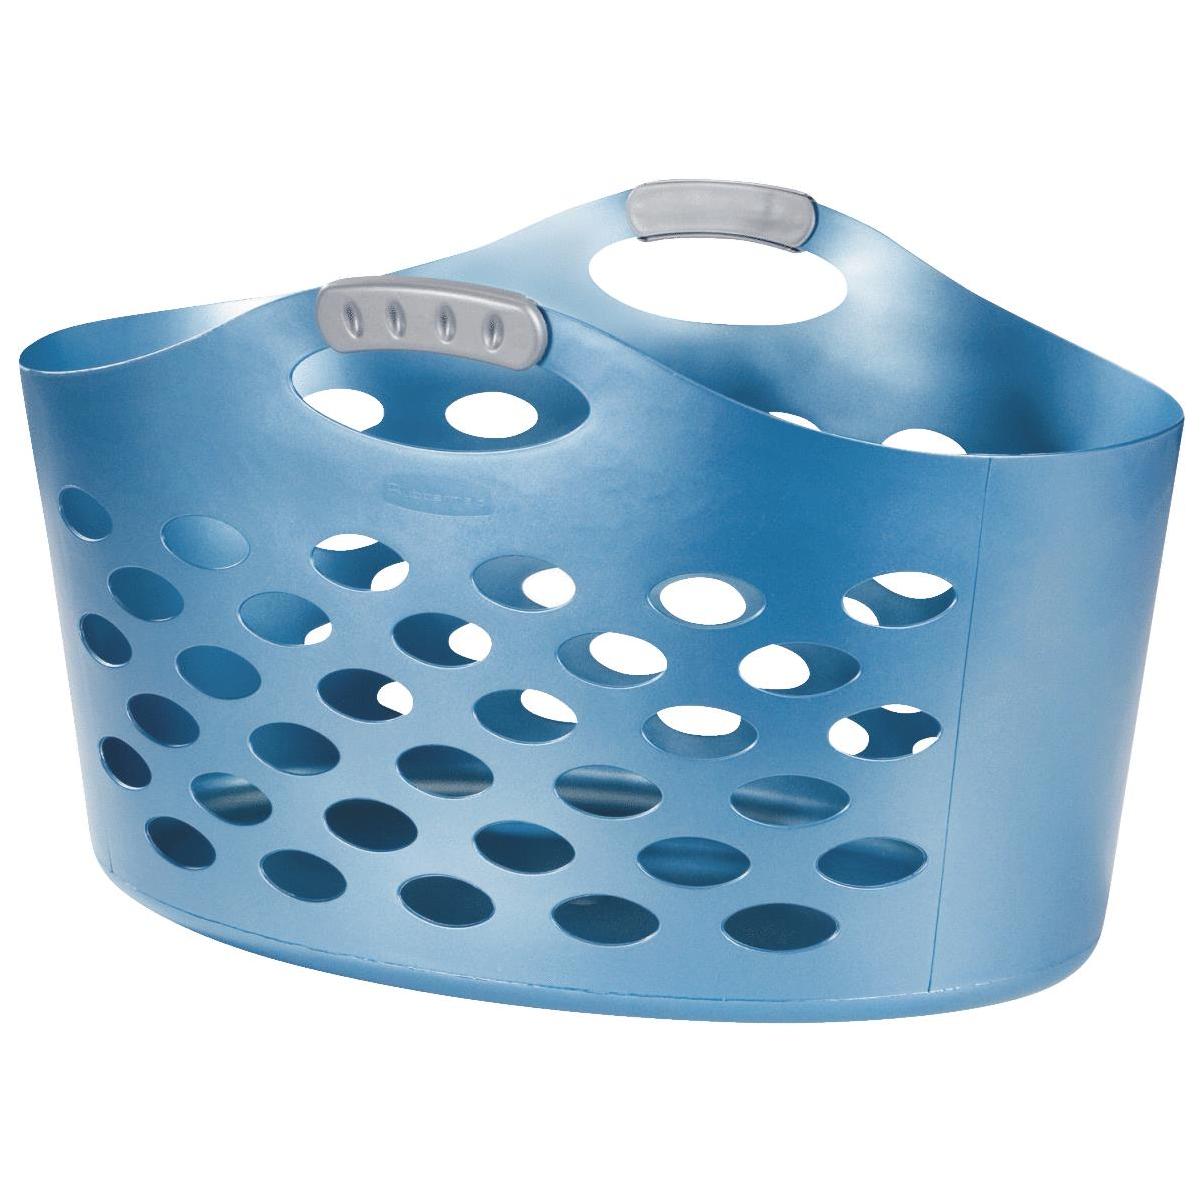 Rubbermaid Blue Flexncarry Basket